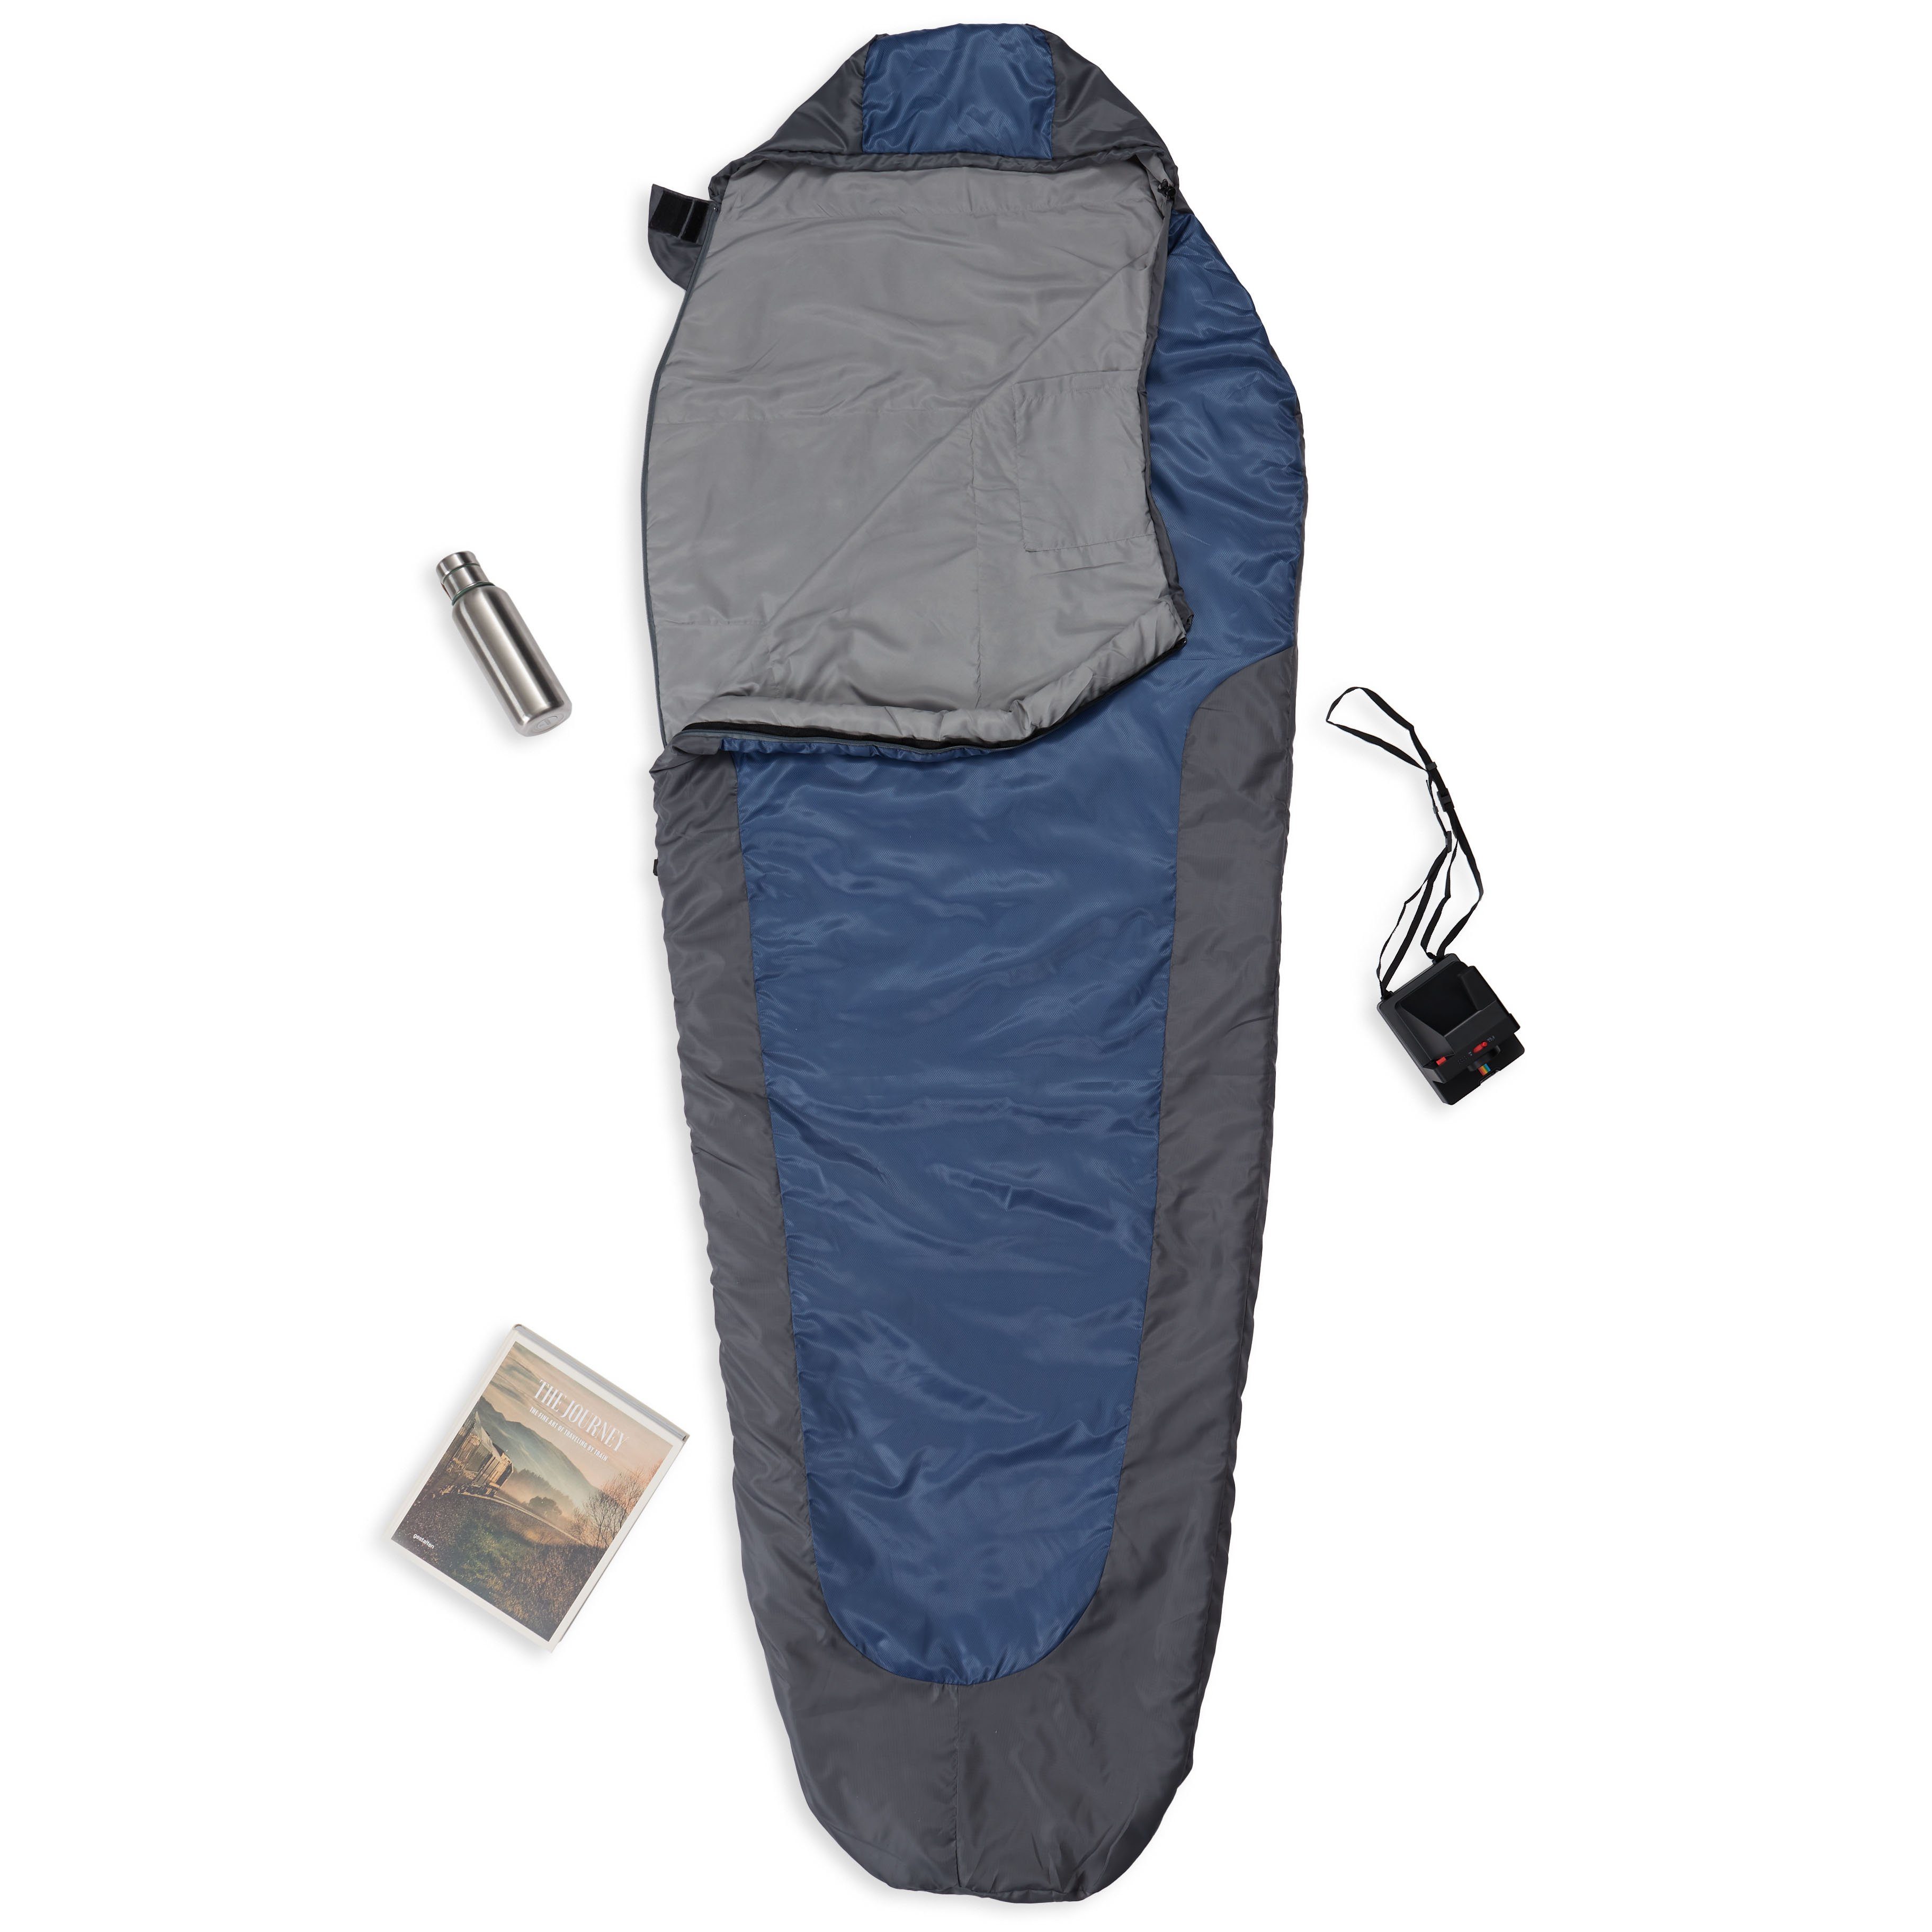 Lumaland Mumienschlafsack Outdoor Tomorrow grau/navyblau Camping -5°C Camping Where im wasserabweisend Schulterbereich Schlafsack 220x80x50, Wärmekragen